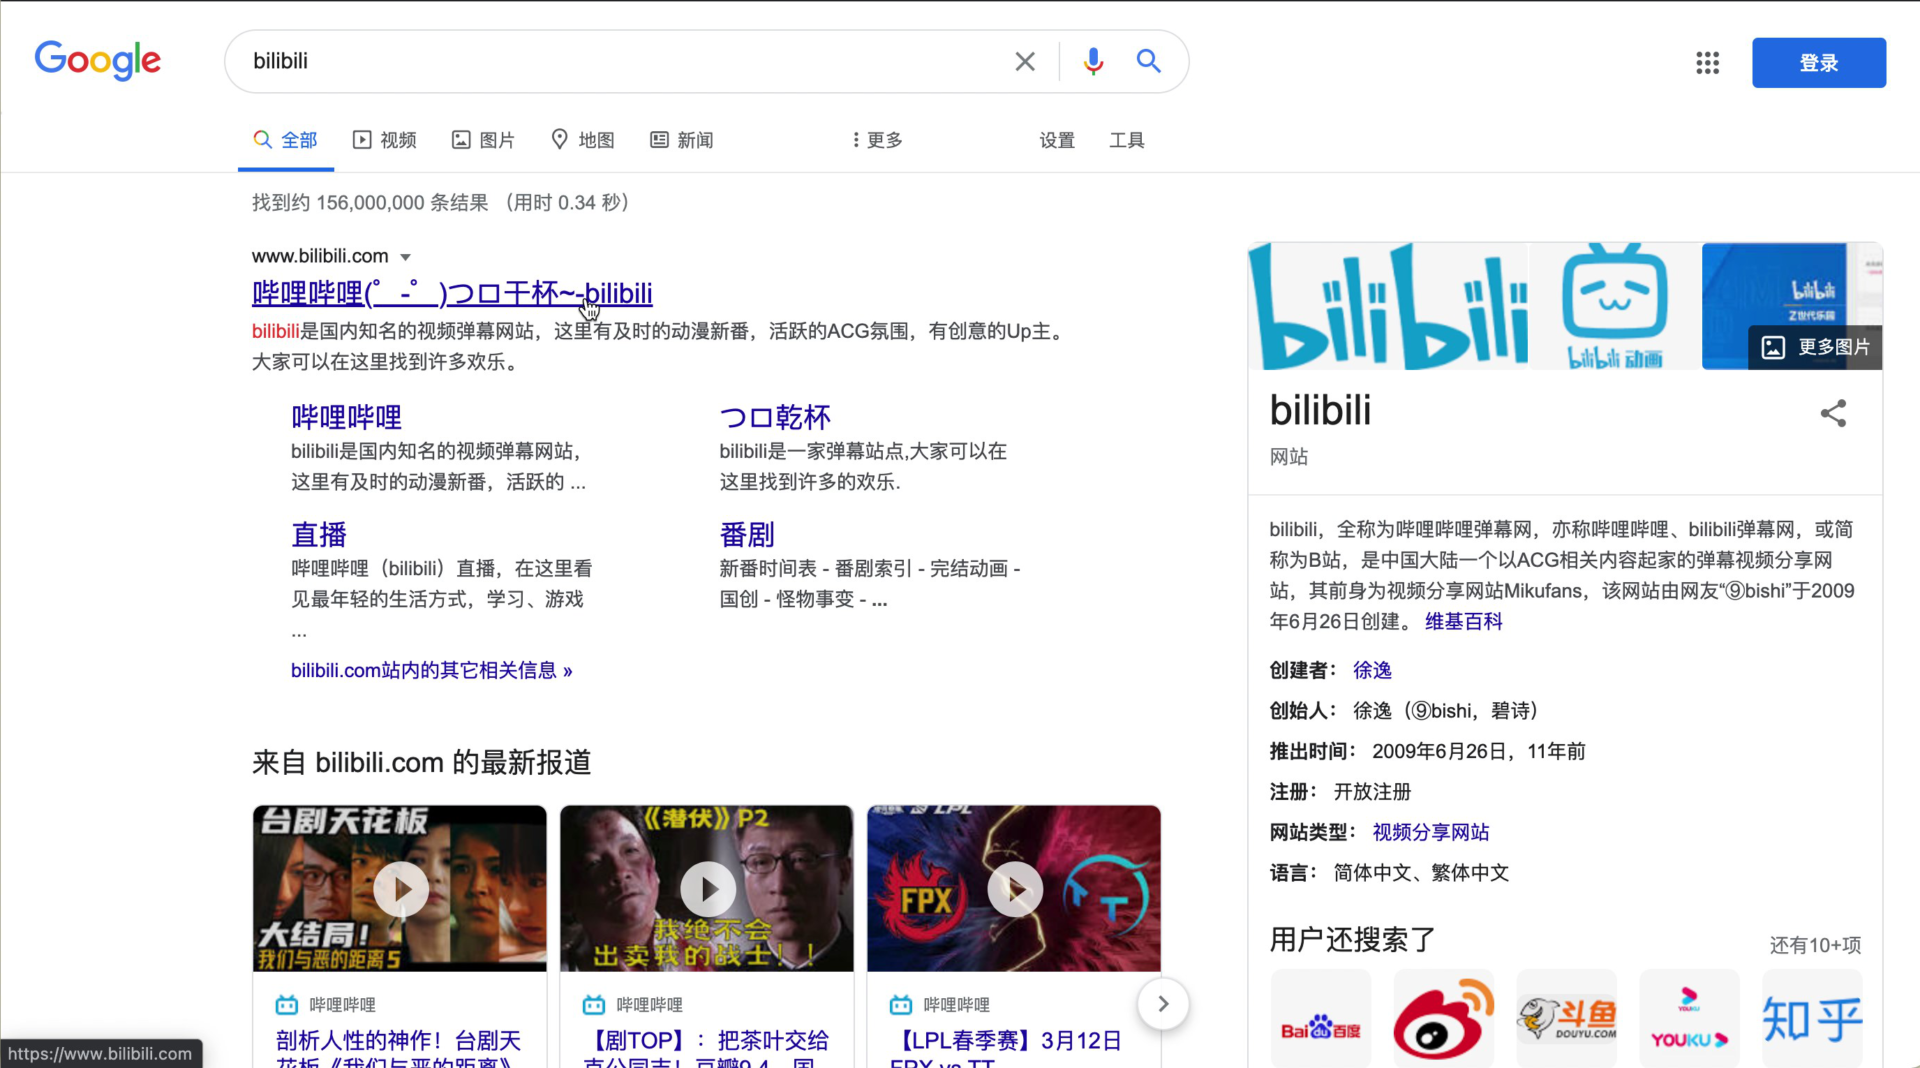 中国sns Bilibili B站 哔哩哔哩 のアカウント開設方法 21年版 チャイブラリー 中国ビジネスオンラインサロン